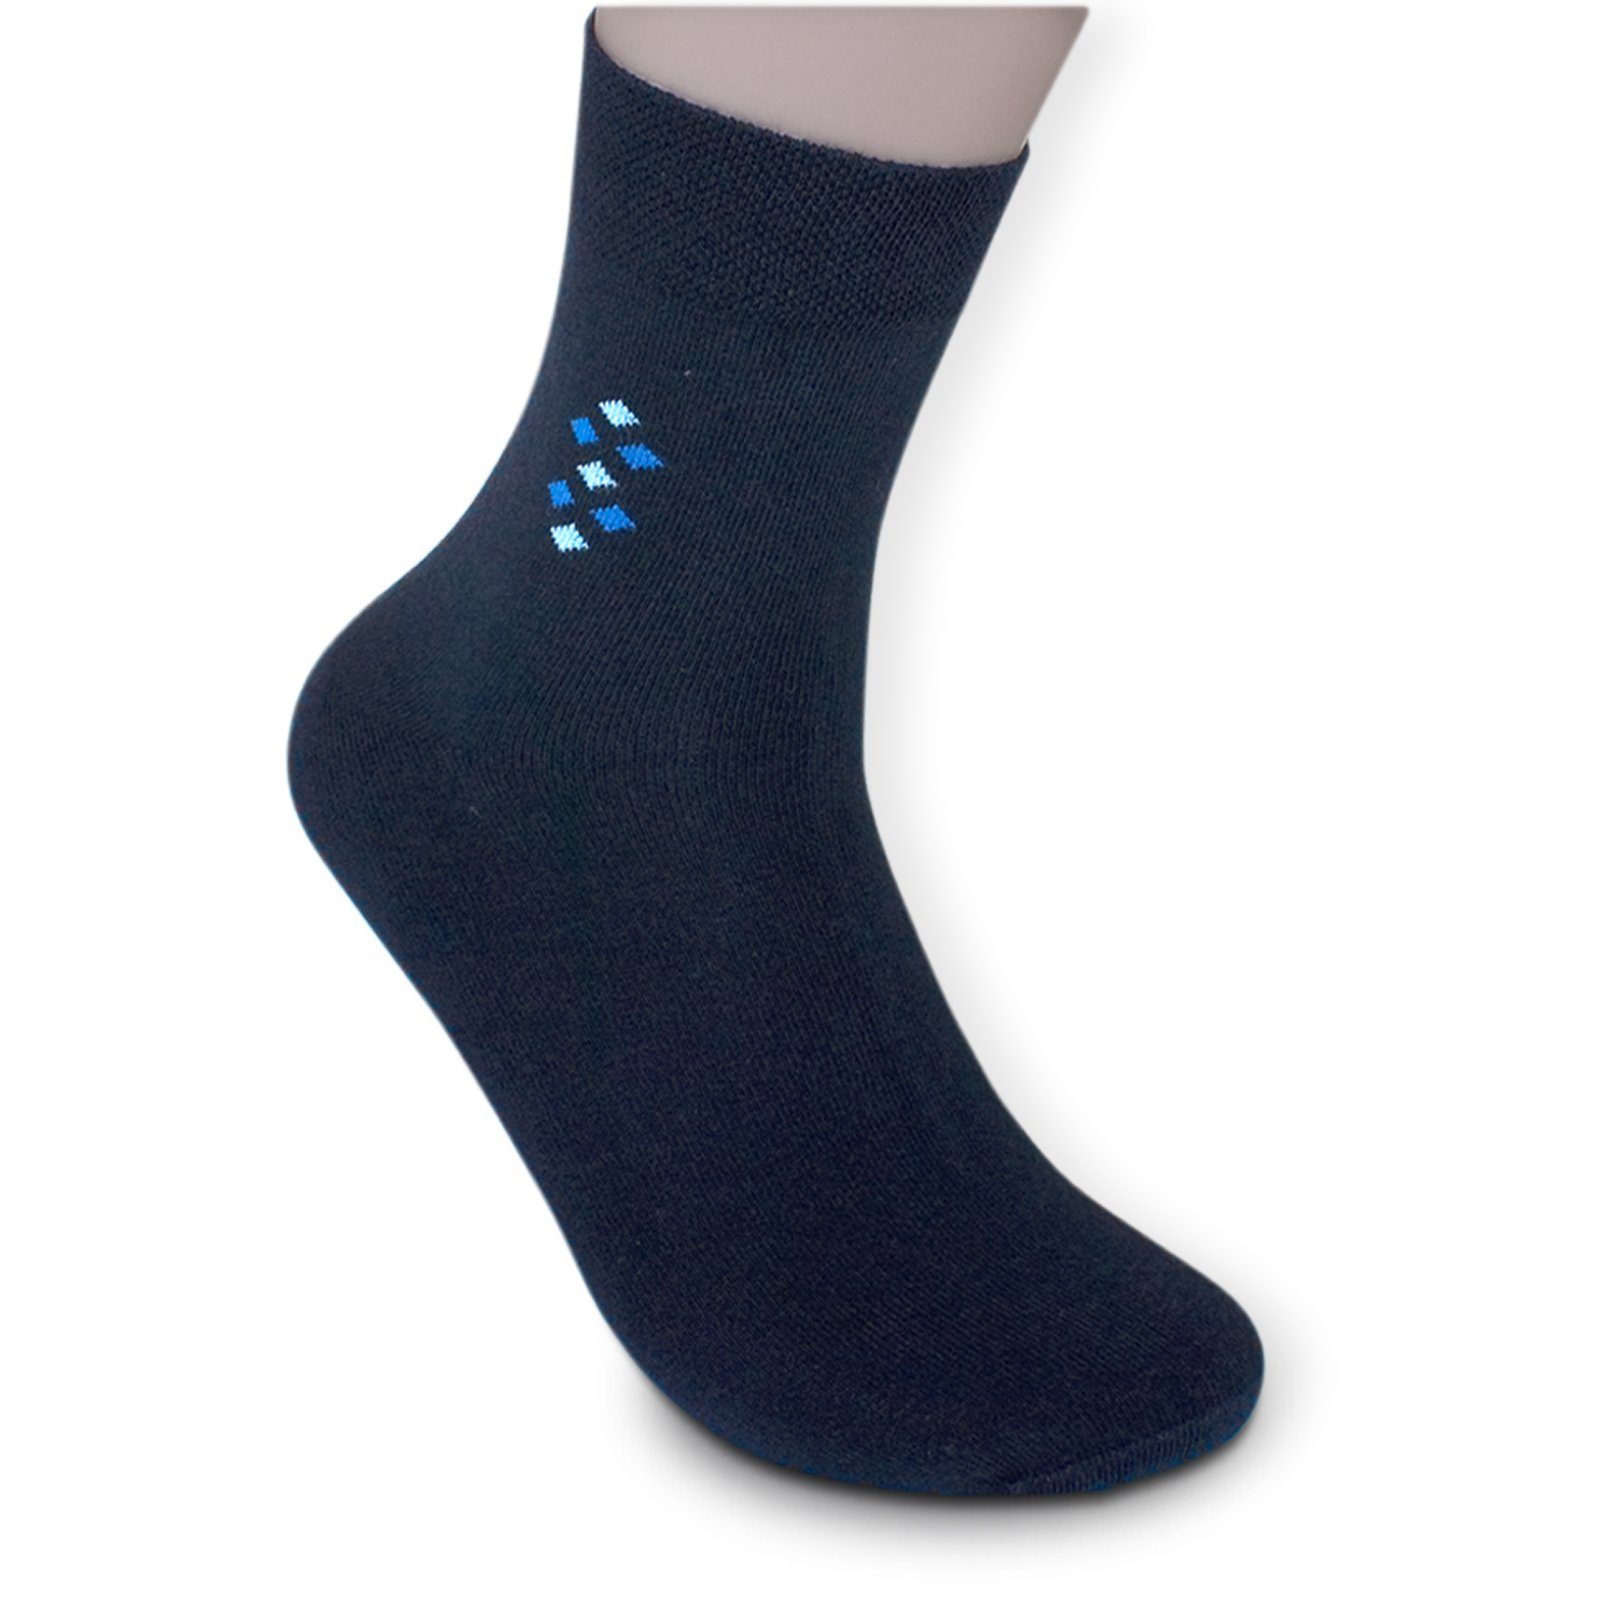 Gummi braun mit Kurzsocken (Bund, grau schwarz) blau Sockenbude Die Komfortbund ohne 5-Paar, KOMFORT